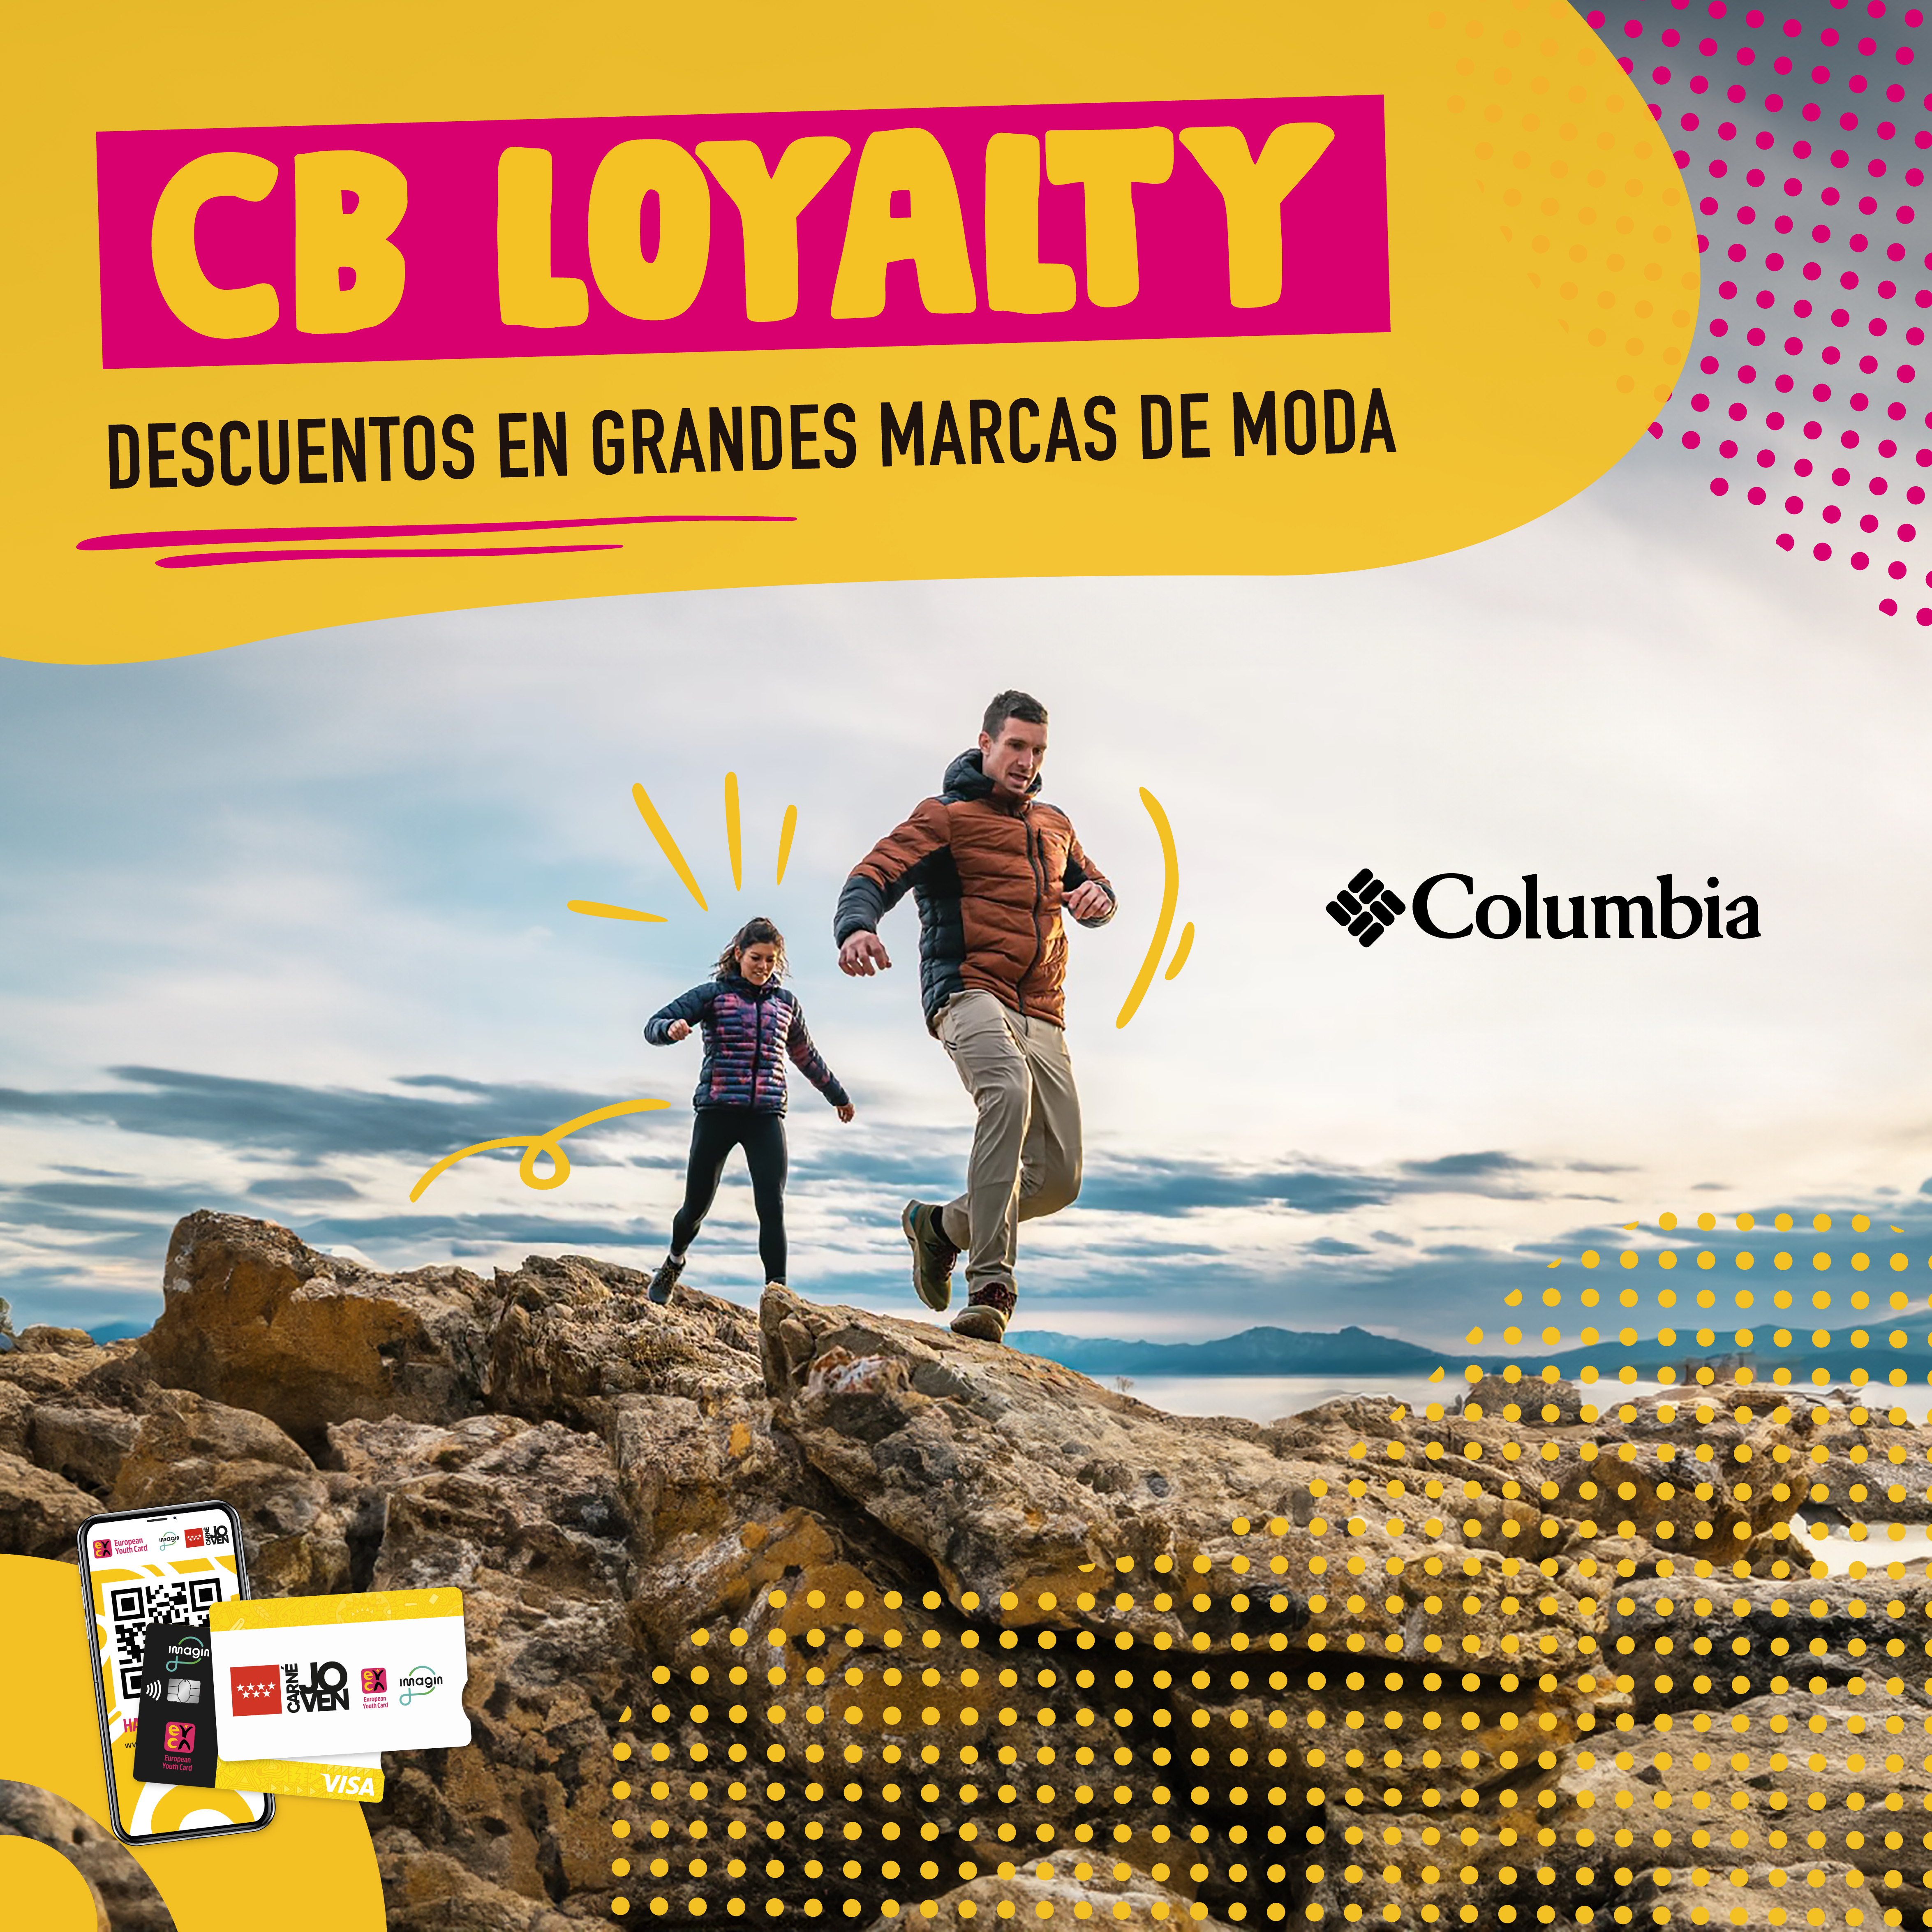 CB LOYALTY  10% descuento en COLUMBIA